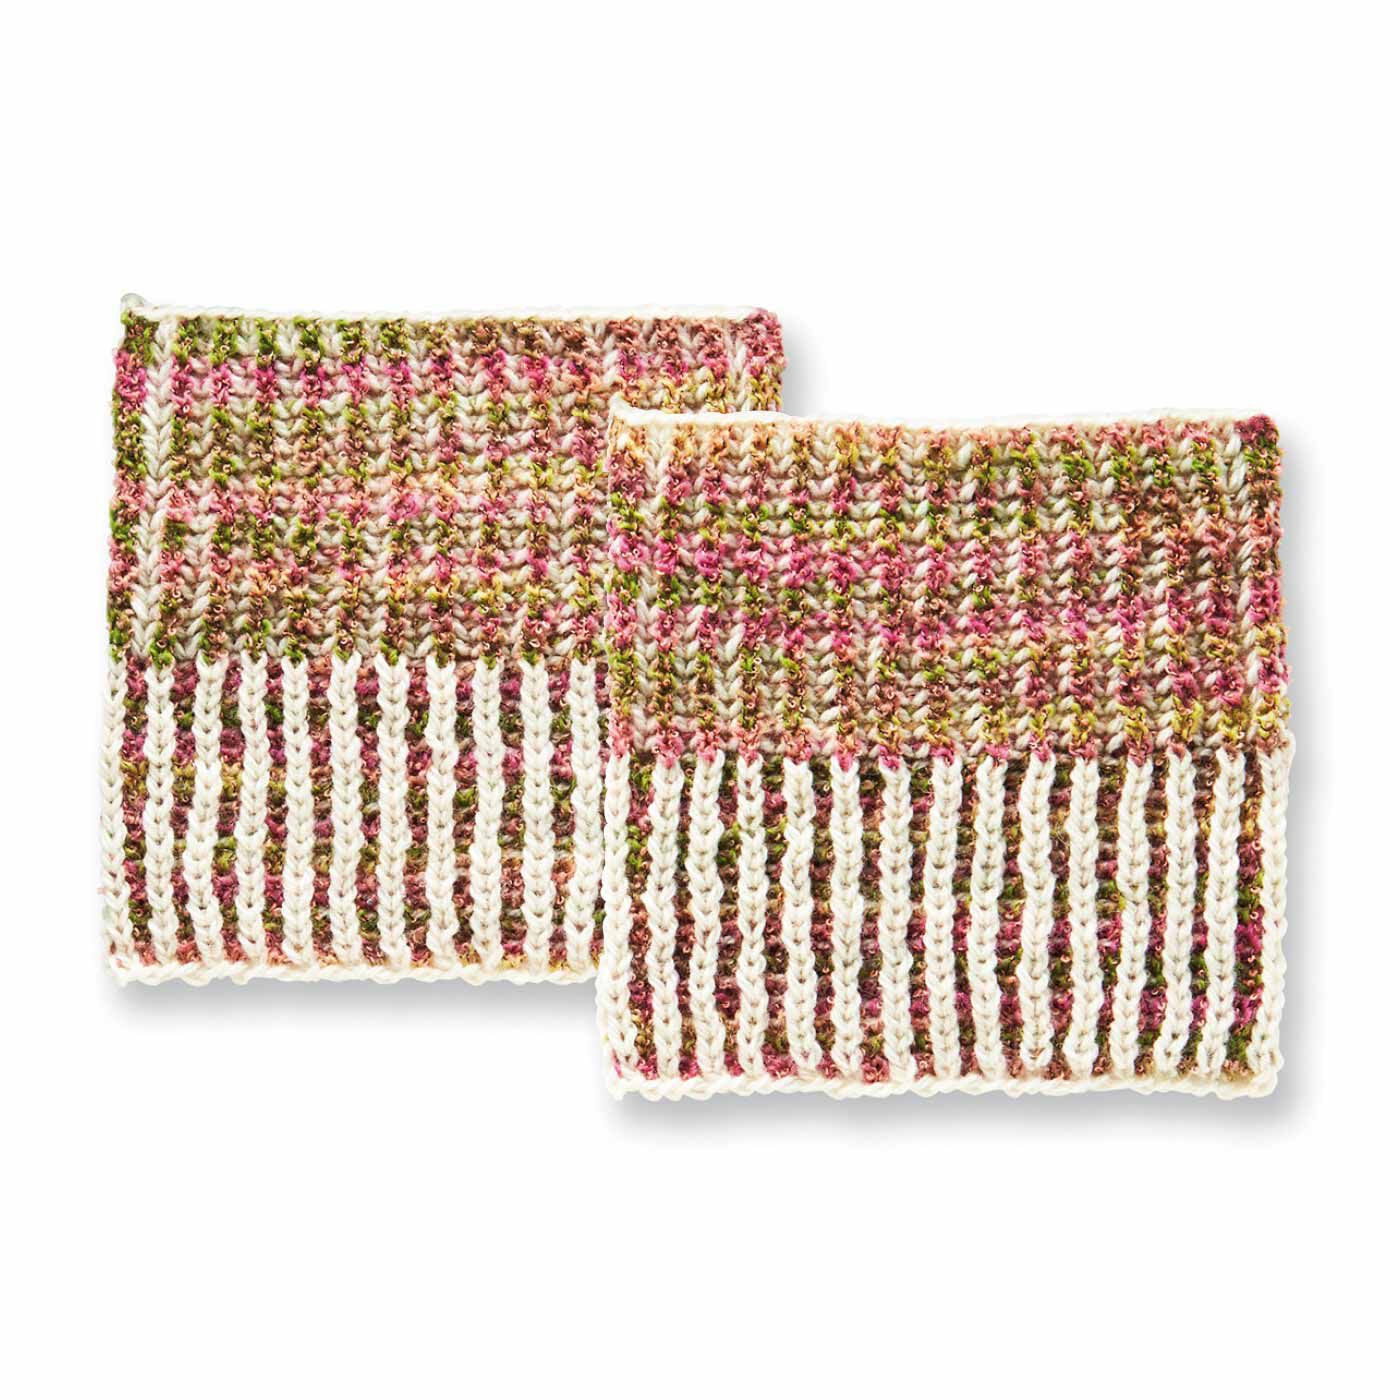 Couturier|棒針編みの沼にはまる ユニーク編み地のサンプラーの会|ざっくりふわふわブリオッシュ編み